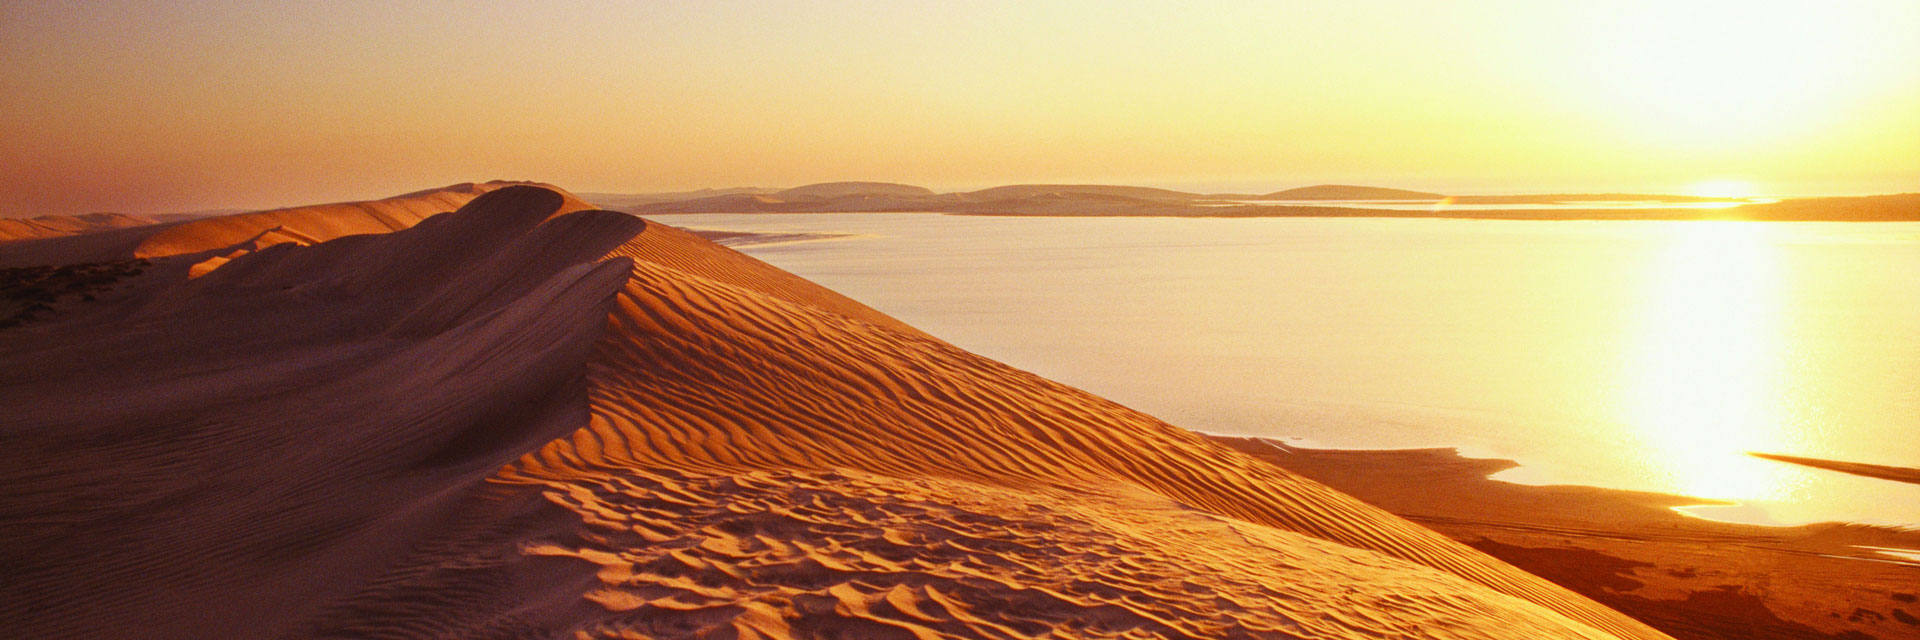 Das Binnenmeer Chaur al-Udaid mitten in der Sandwüste. © Qatar Tourism Authority